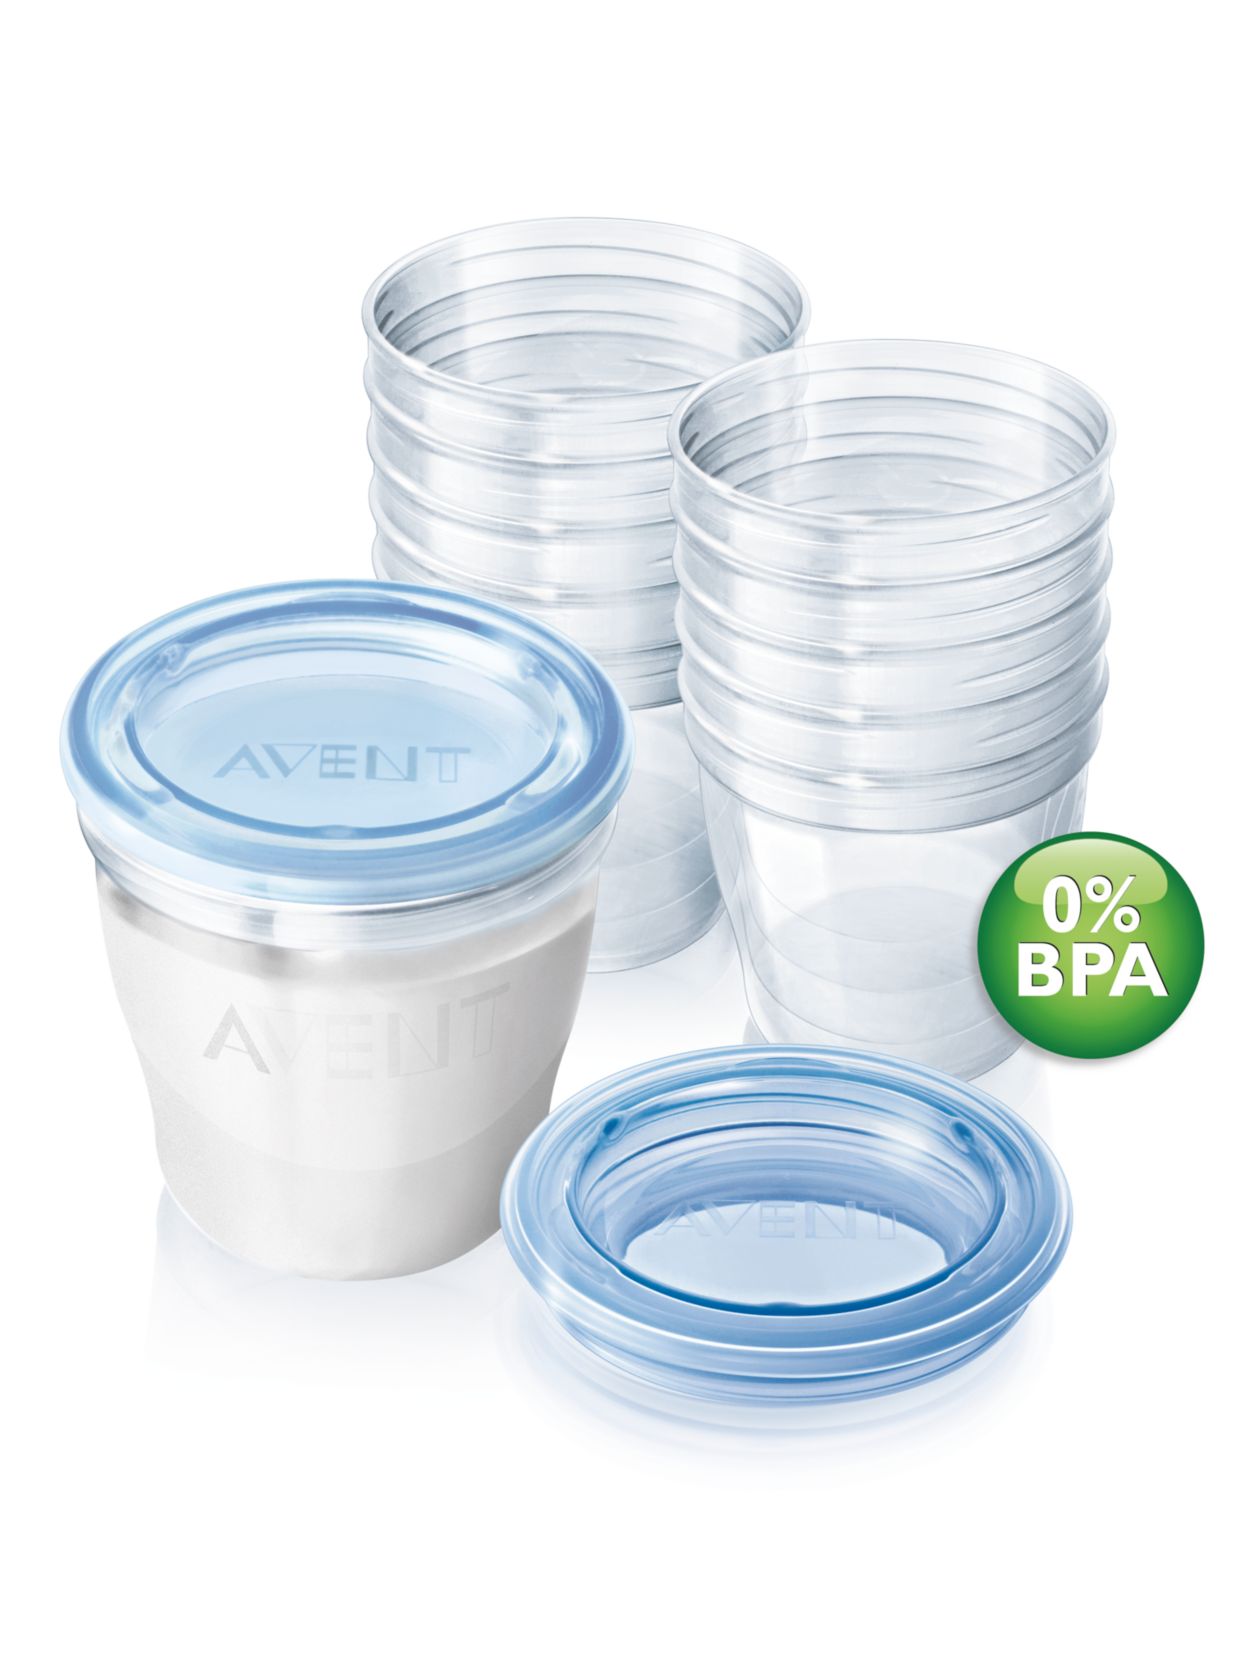 VIA Pots de conservation pour lait maternel Avent SCF612/10